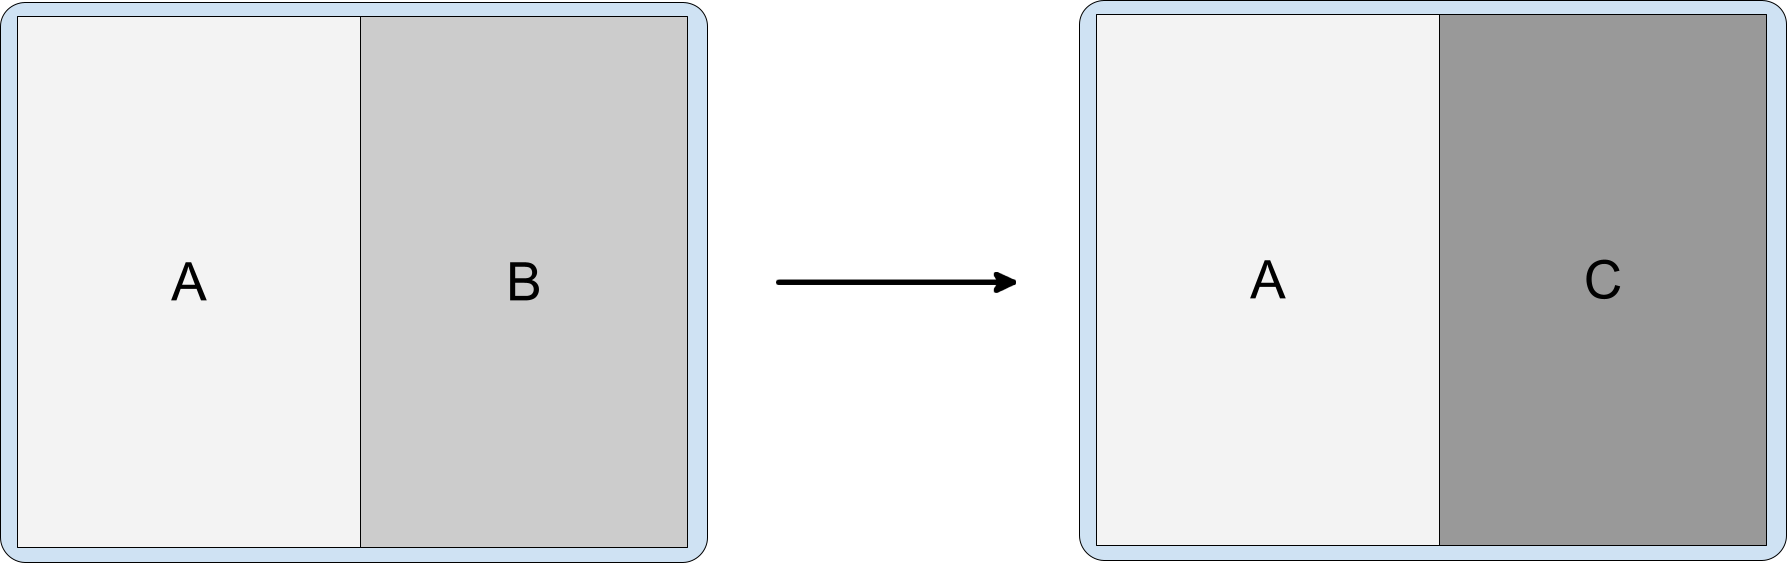 Divisão de atividade contendo as atividades A, B e C com a C empilhada sobre a
          B.